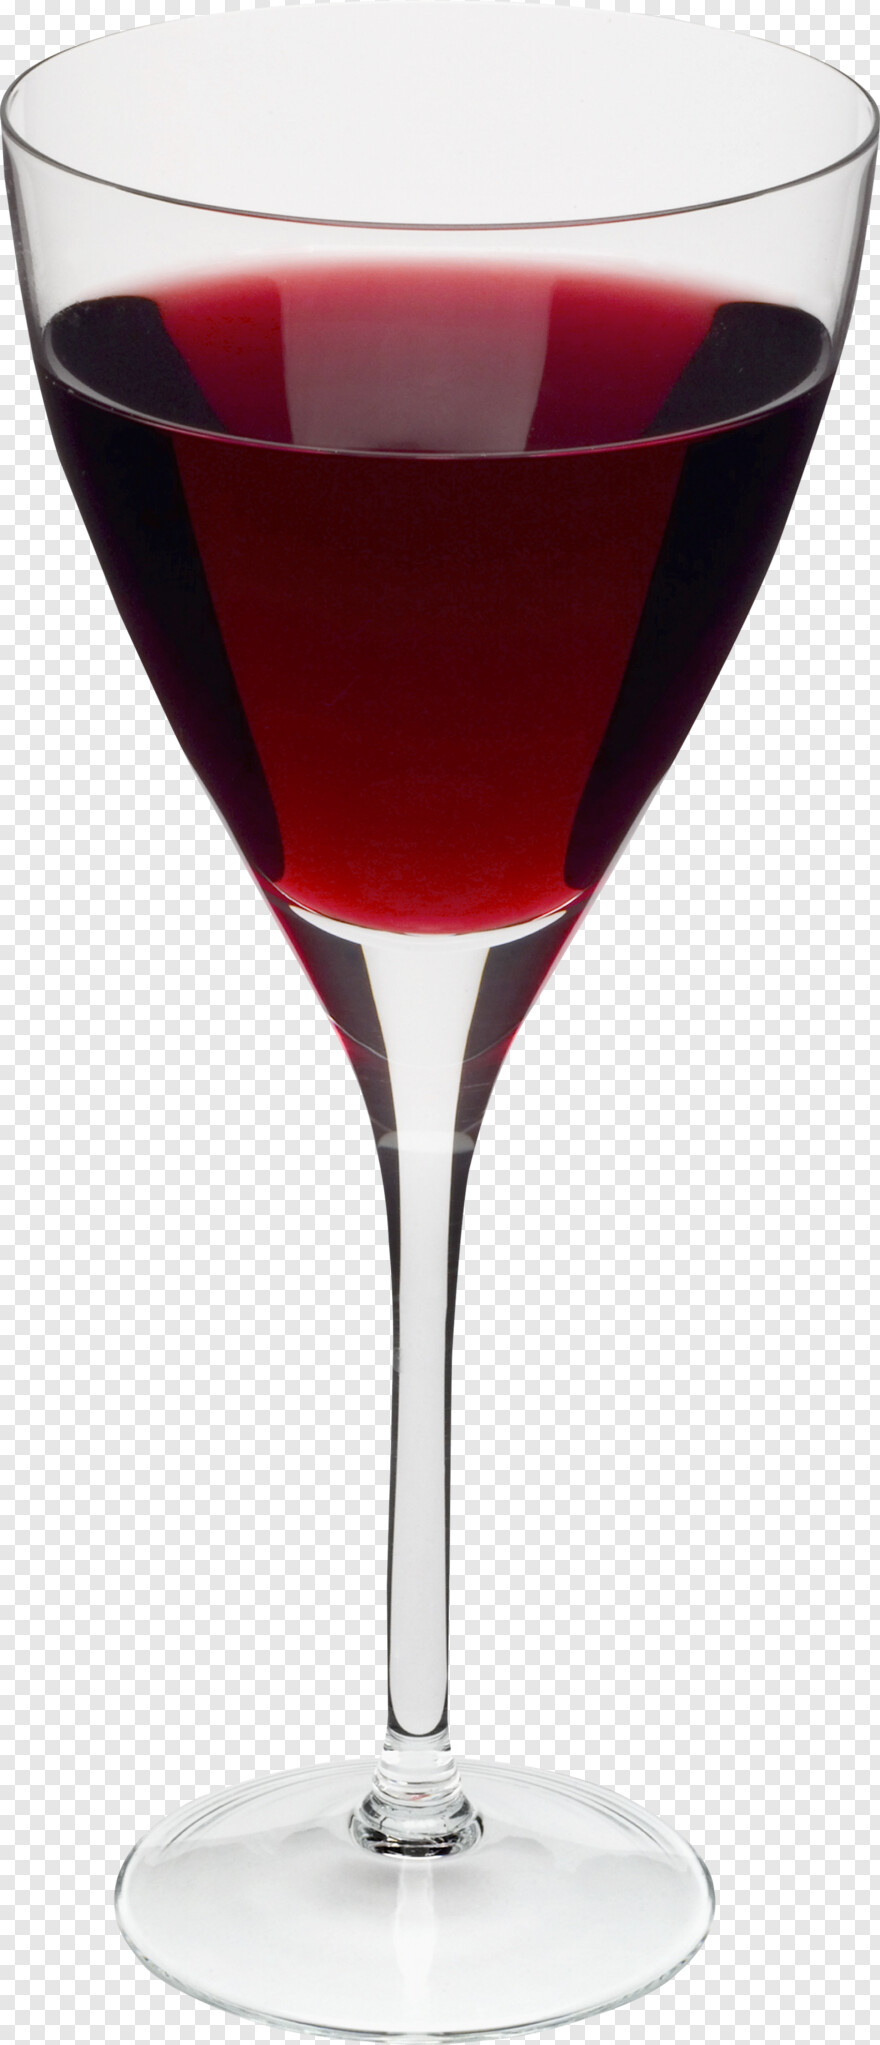 wine-glass # 795537